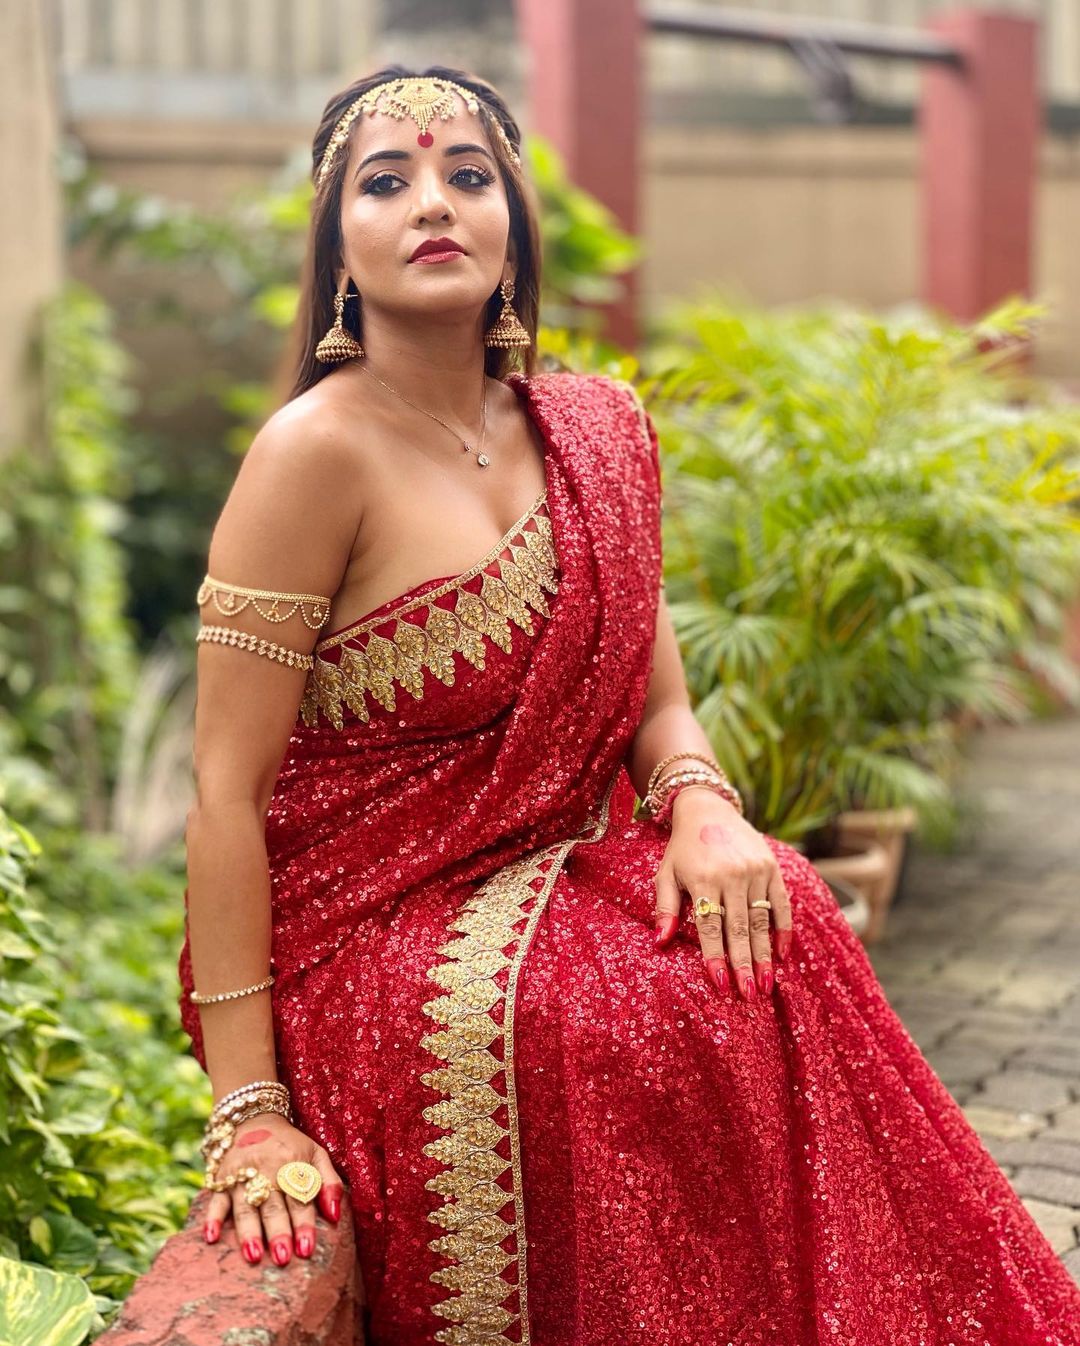 Bhojpuri Actress Monalisa ready for Ratri ke Yatri web series red saree look goes viral | भोजपुरी एक्ट्रेस मोनालिसा ने लाल रंग की साड़ी में ढाया कहर, अब &#39;रात्रि के यात्री&#39; के